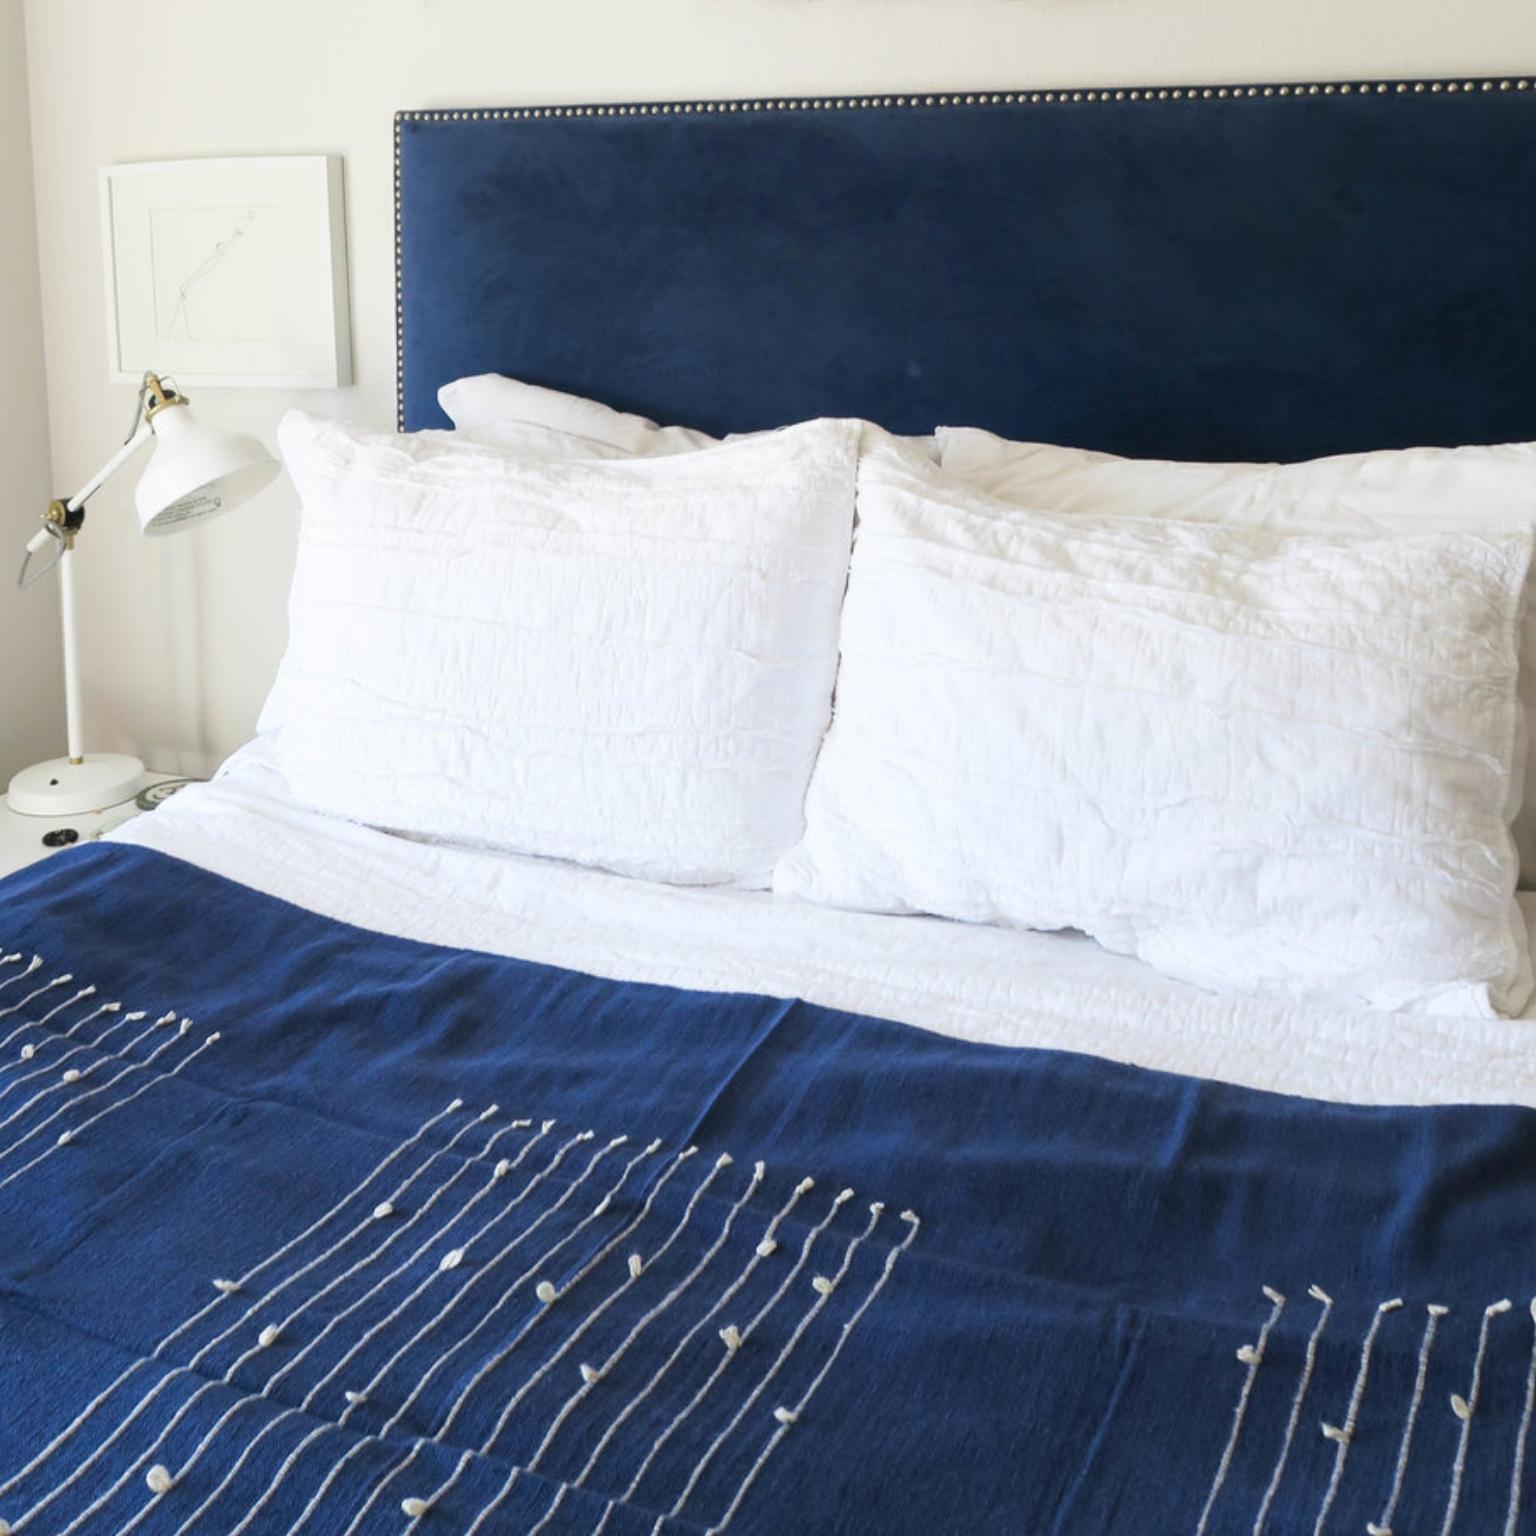 Rosewood Indigo Handloom Queen Size Bedpsread / Coverlet in Stripes Design 3